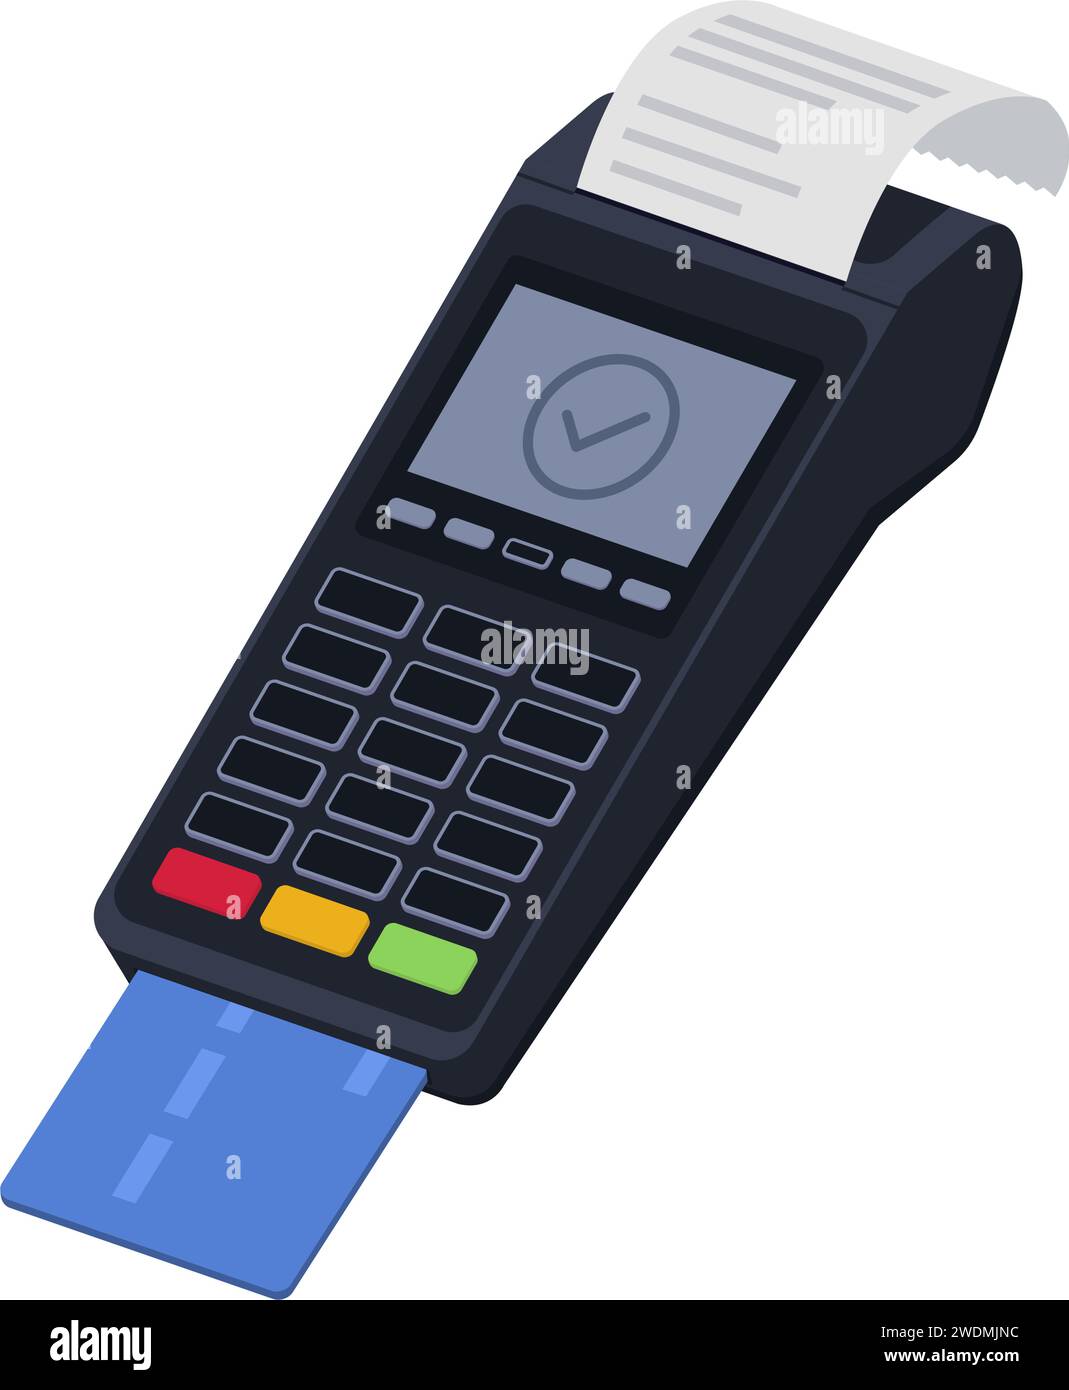 Terminal de point de vente traitant un paiement par carte de crédit et un reçu imprimé Illustration de Vecteur